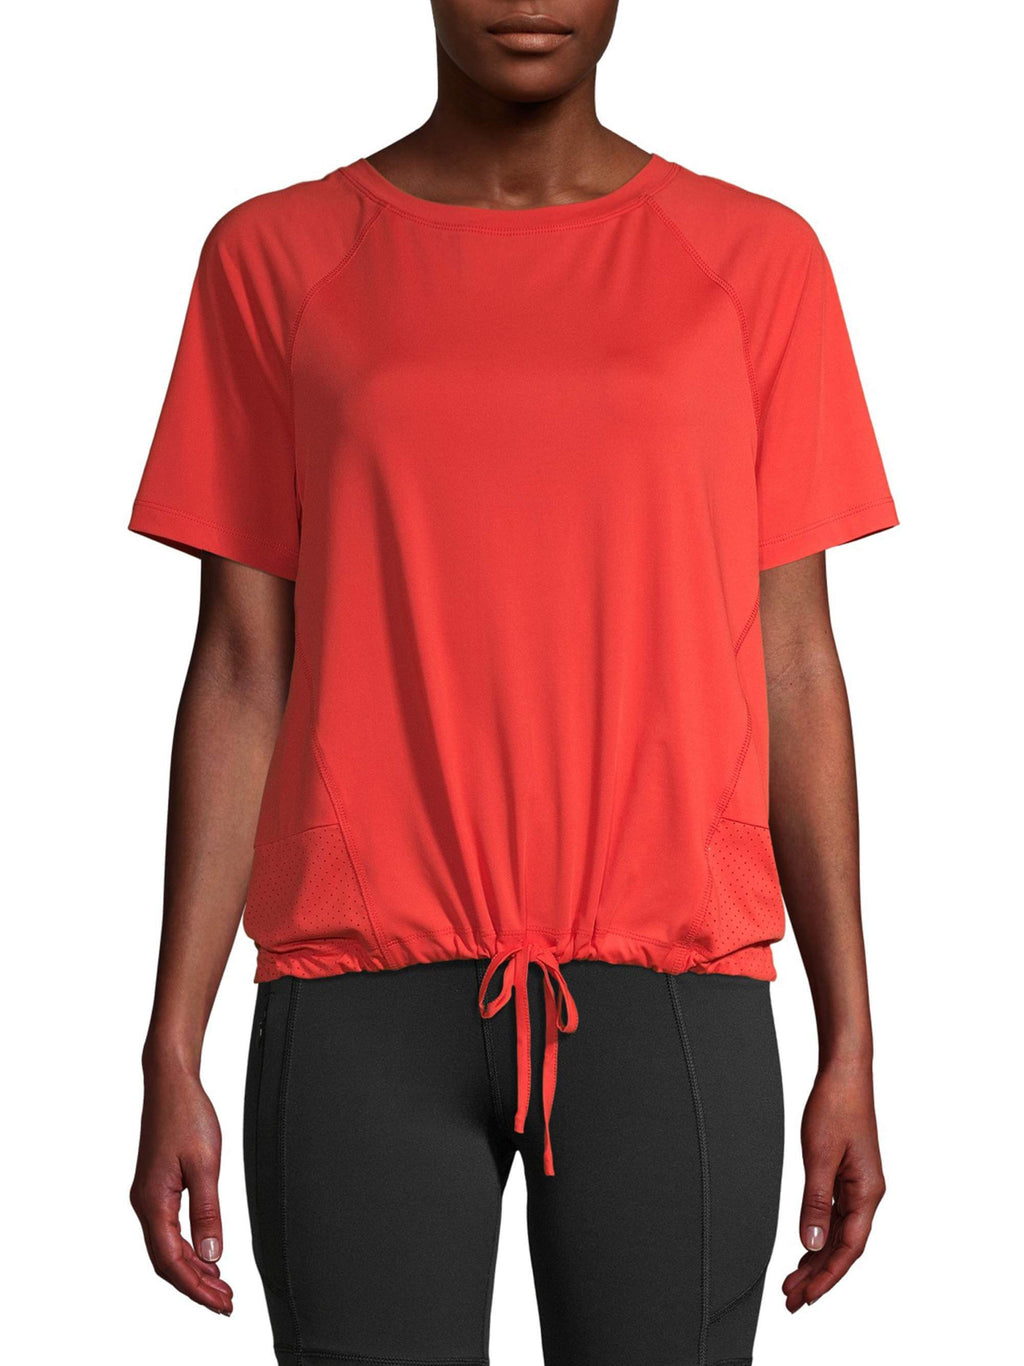 Avia Women's Athleisure Commuter Short Sleeve T-Shirt Size M 8-10